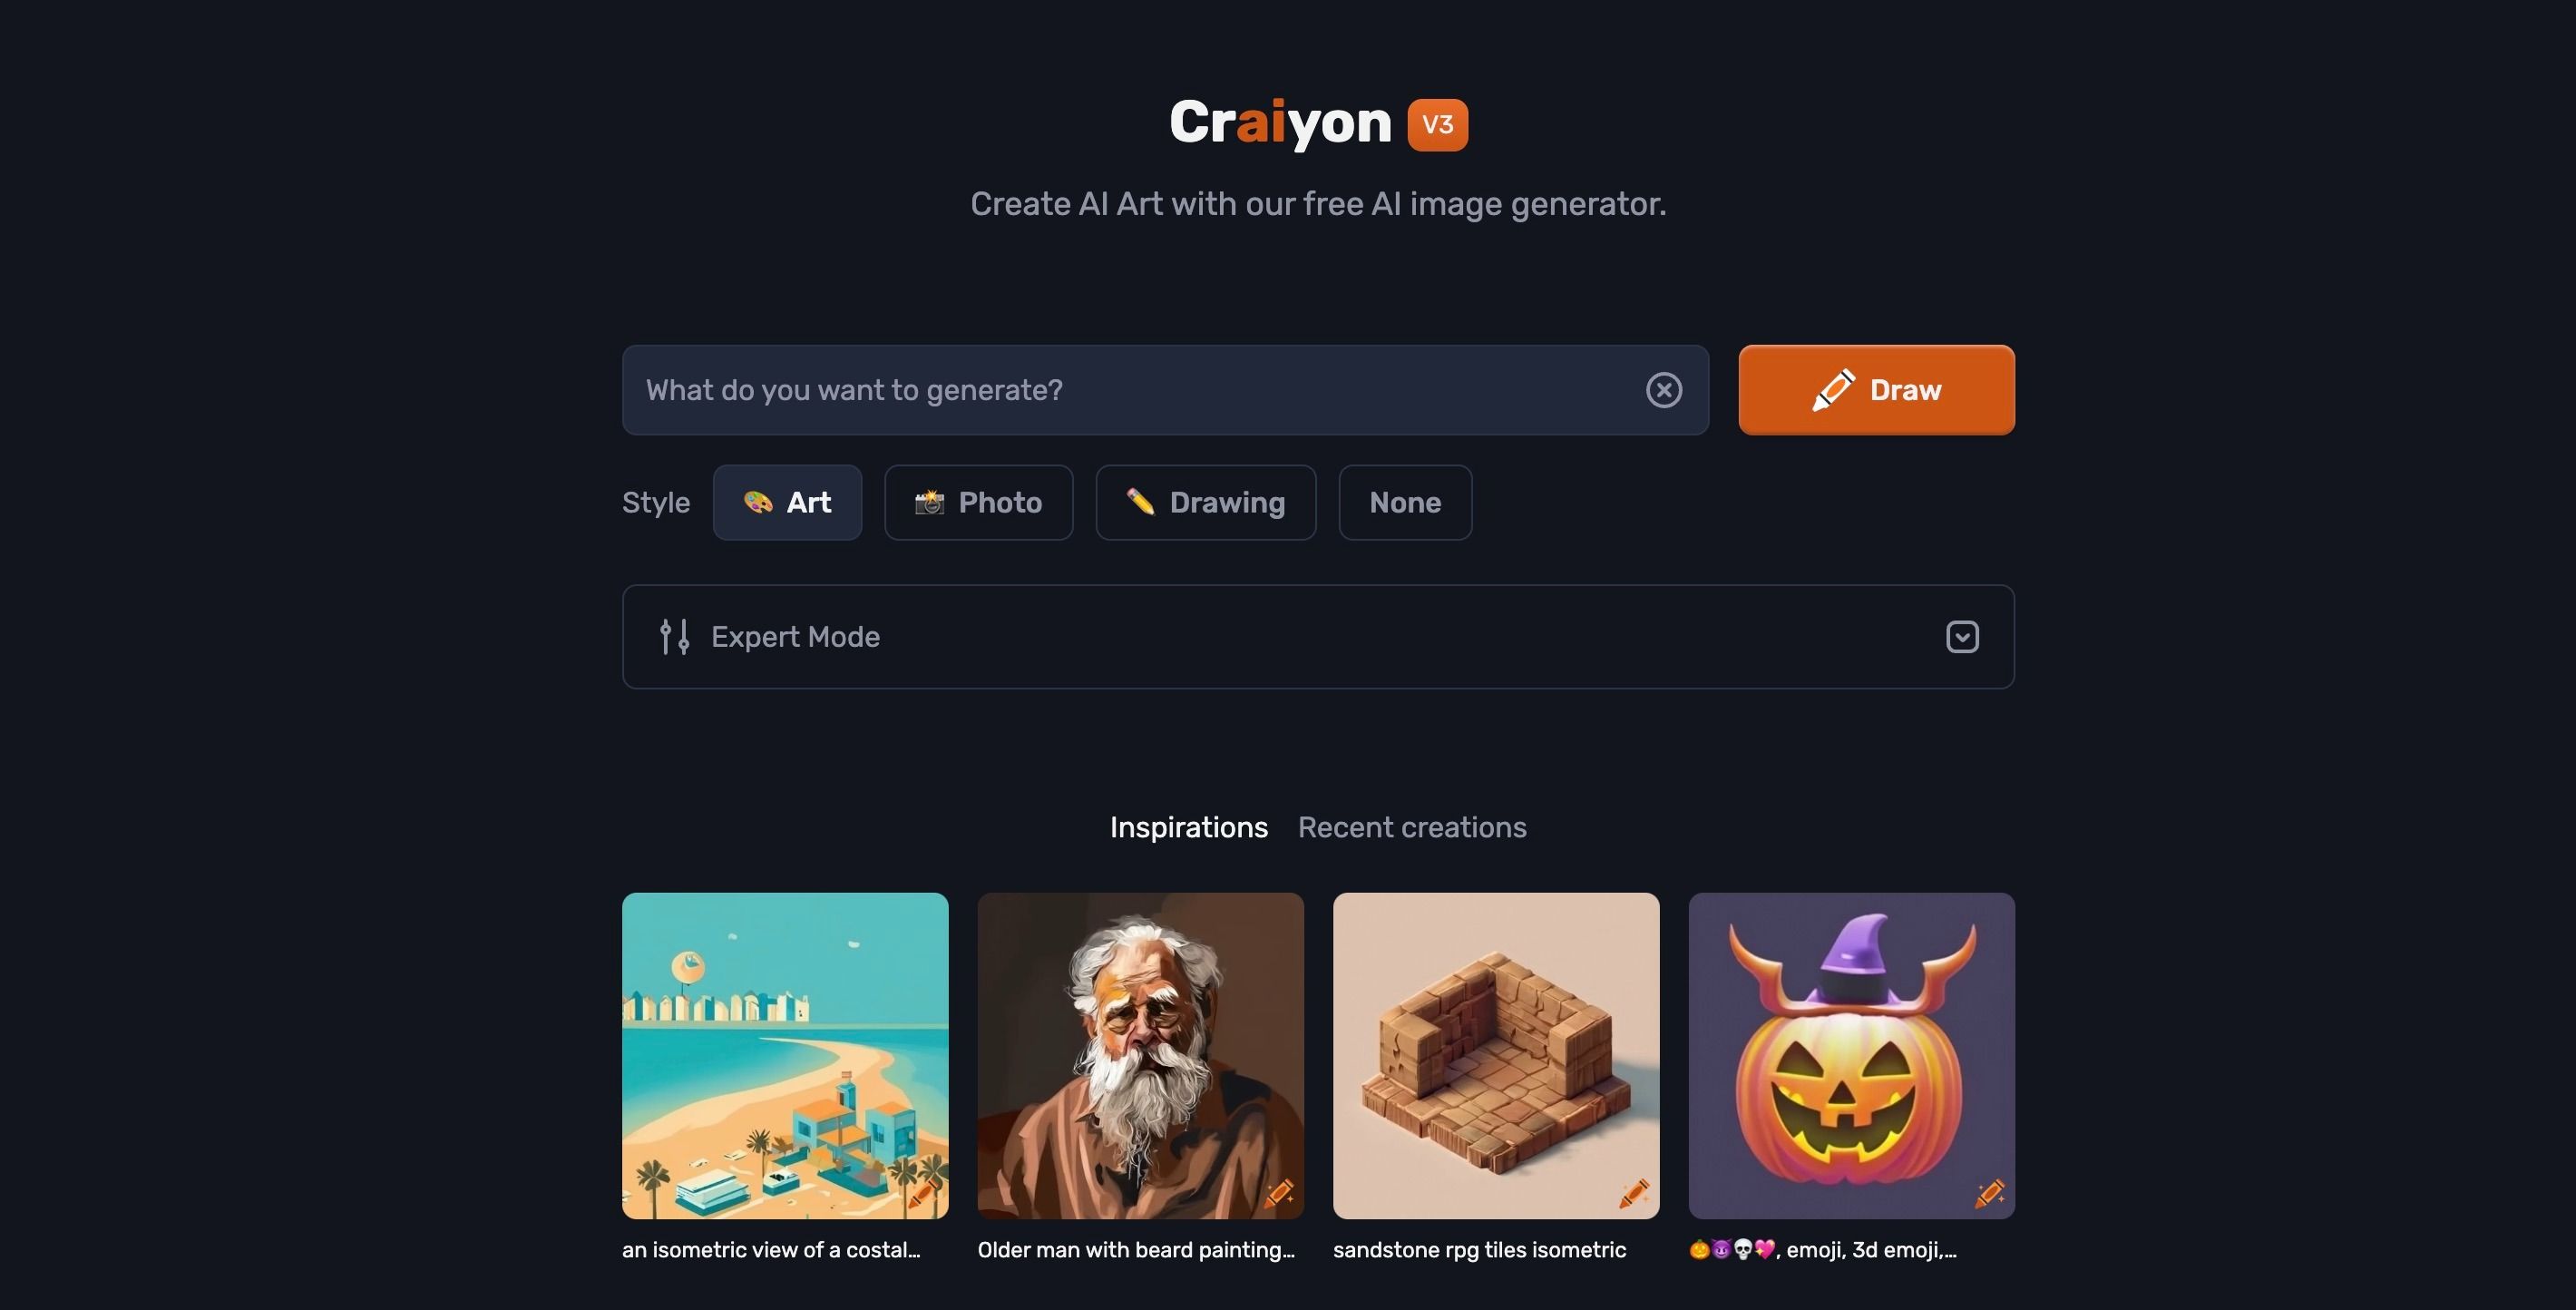 Craiyon features 